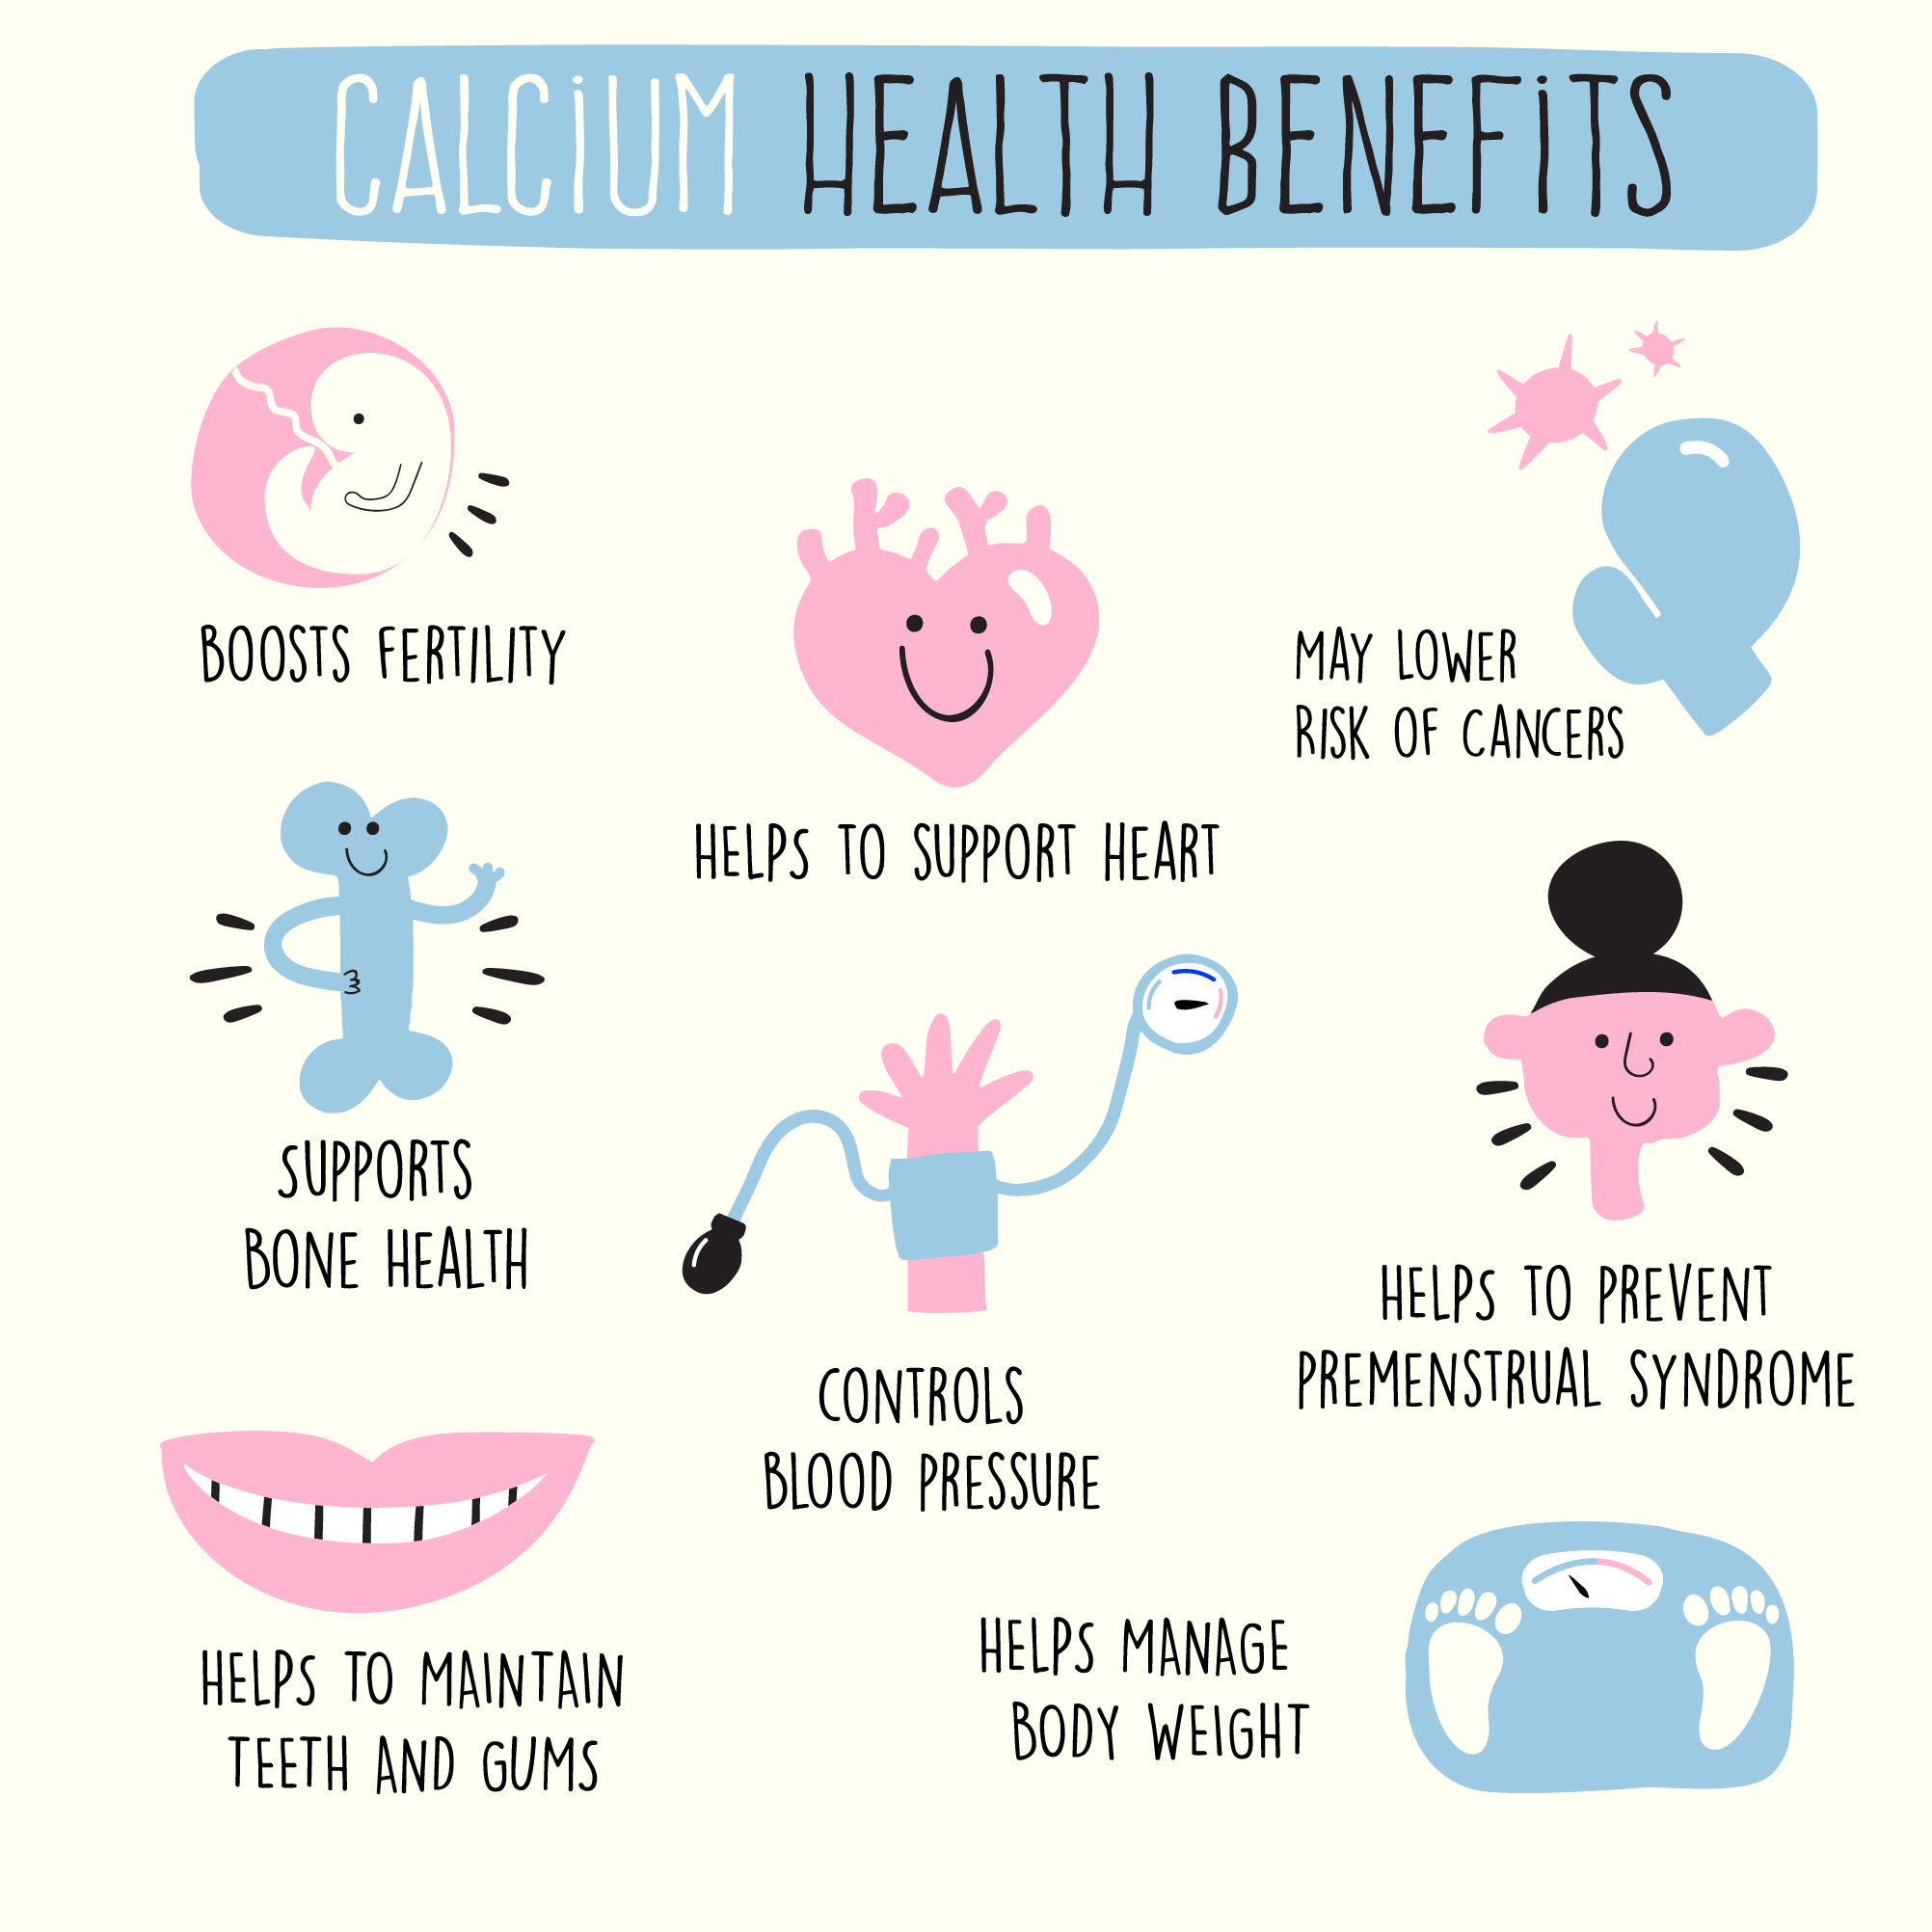 enough calcium,sources of calcium,pregnant women,calcium intake,calcium absorption,bone health,kidney stones,daily calcium intake